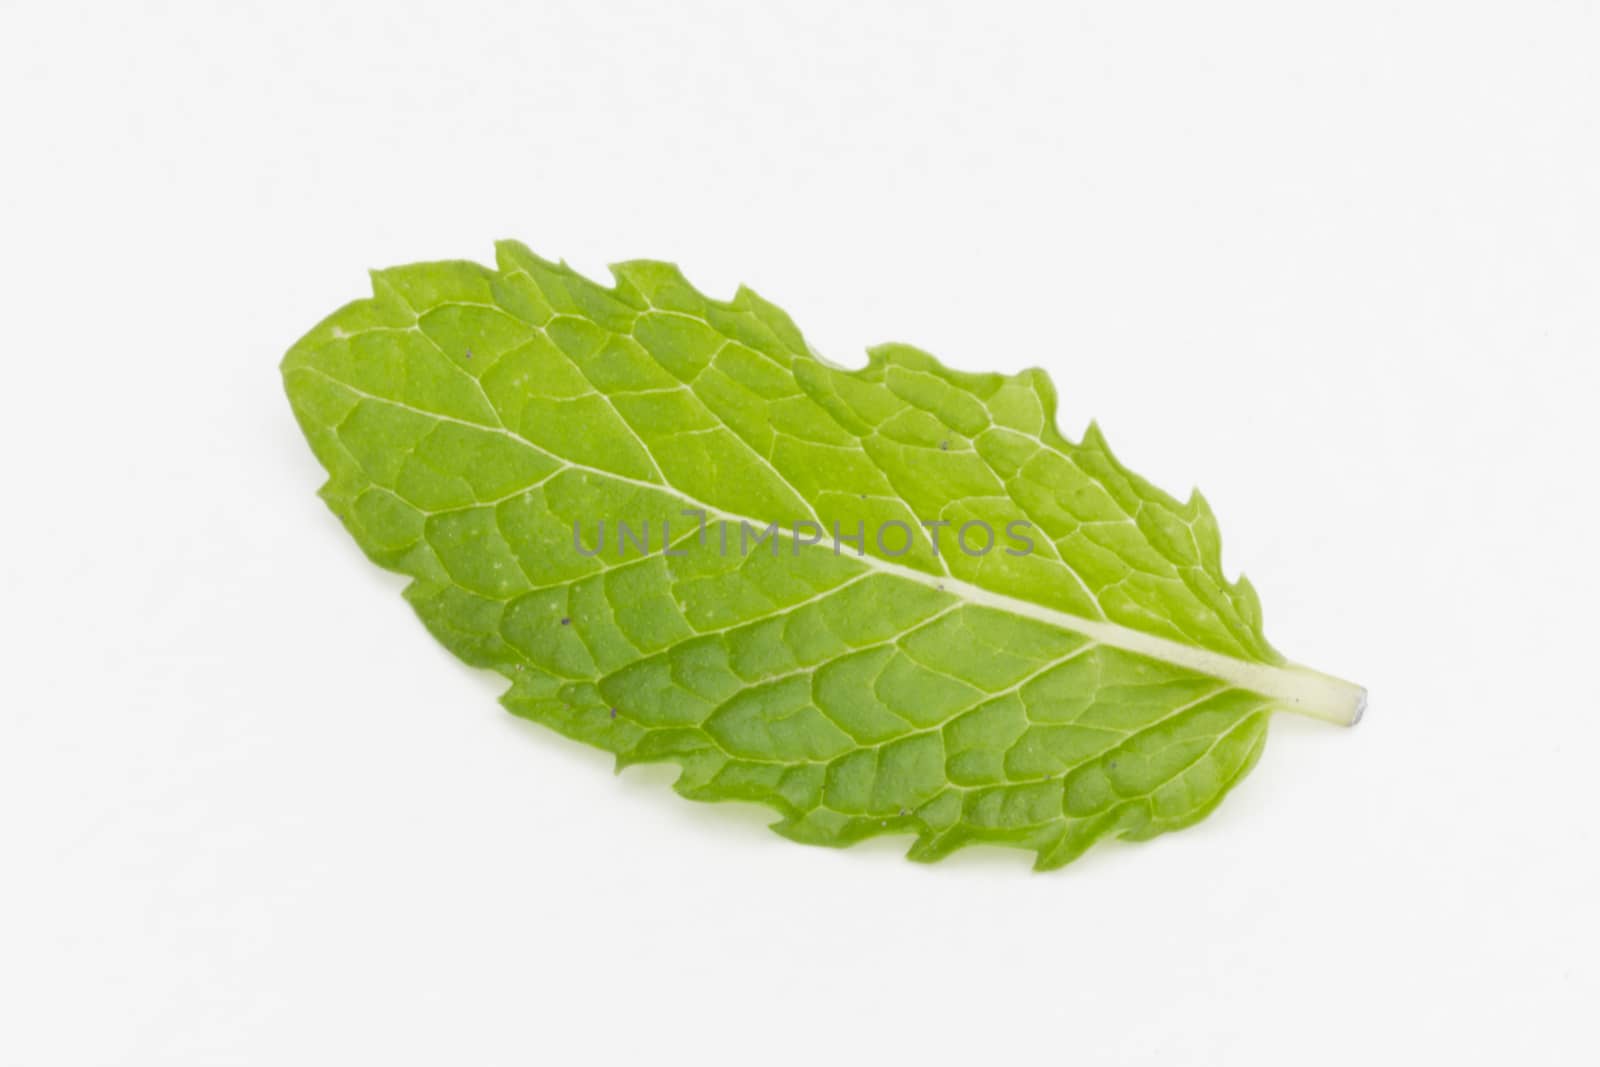 fresh mint leaf isolated on white background